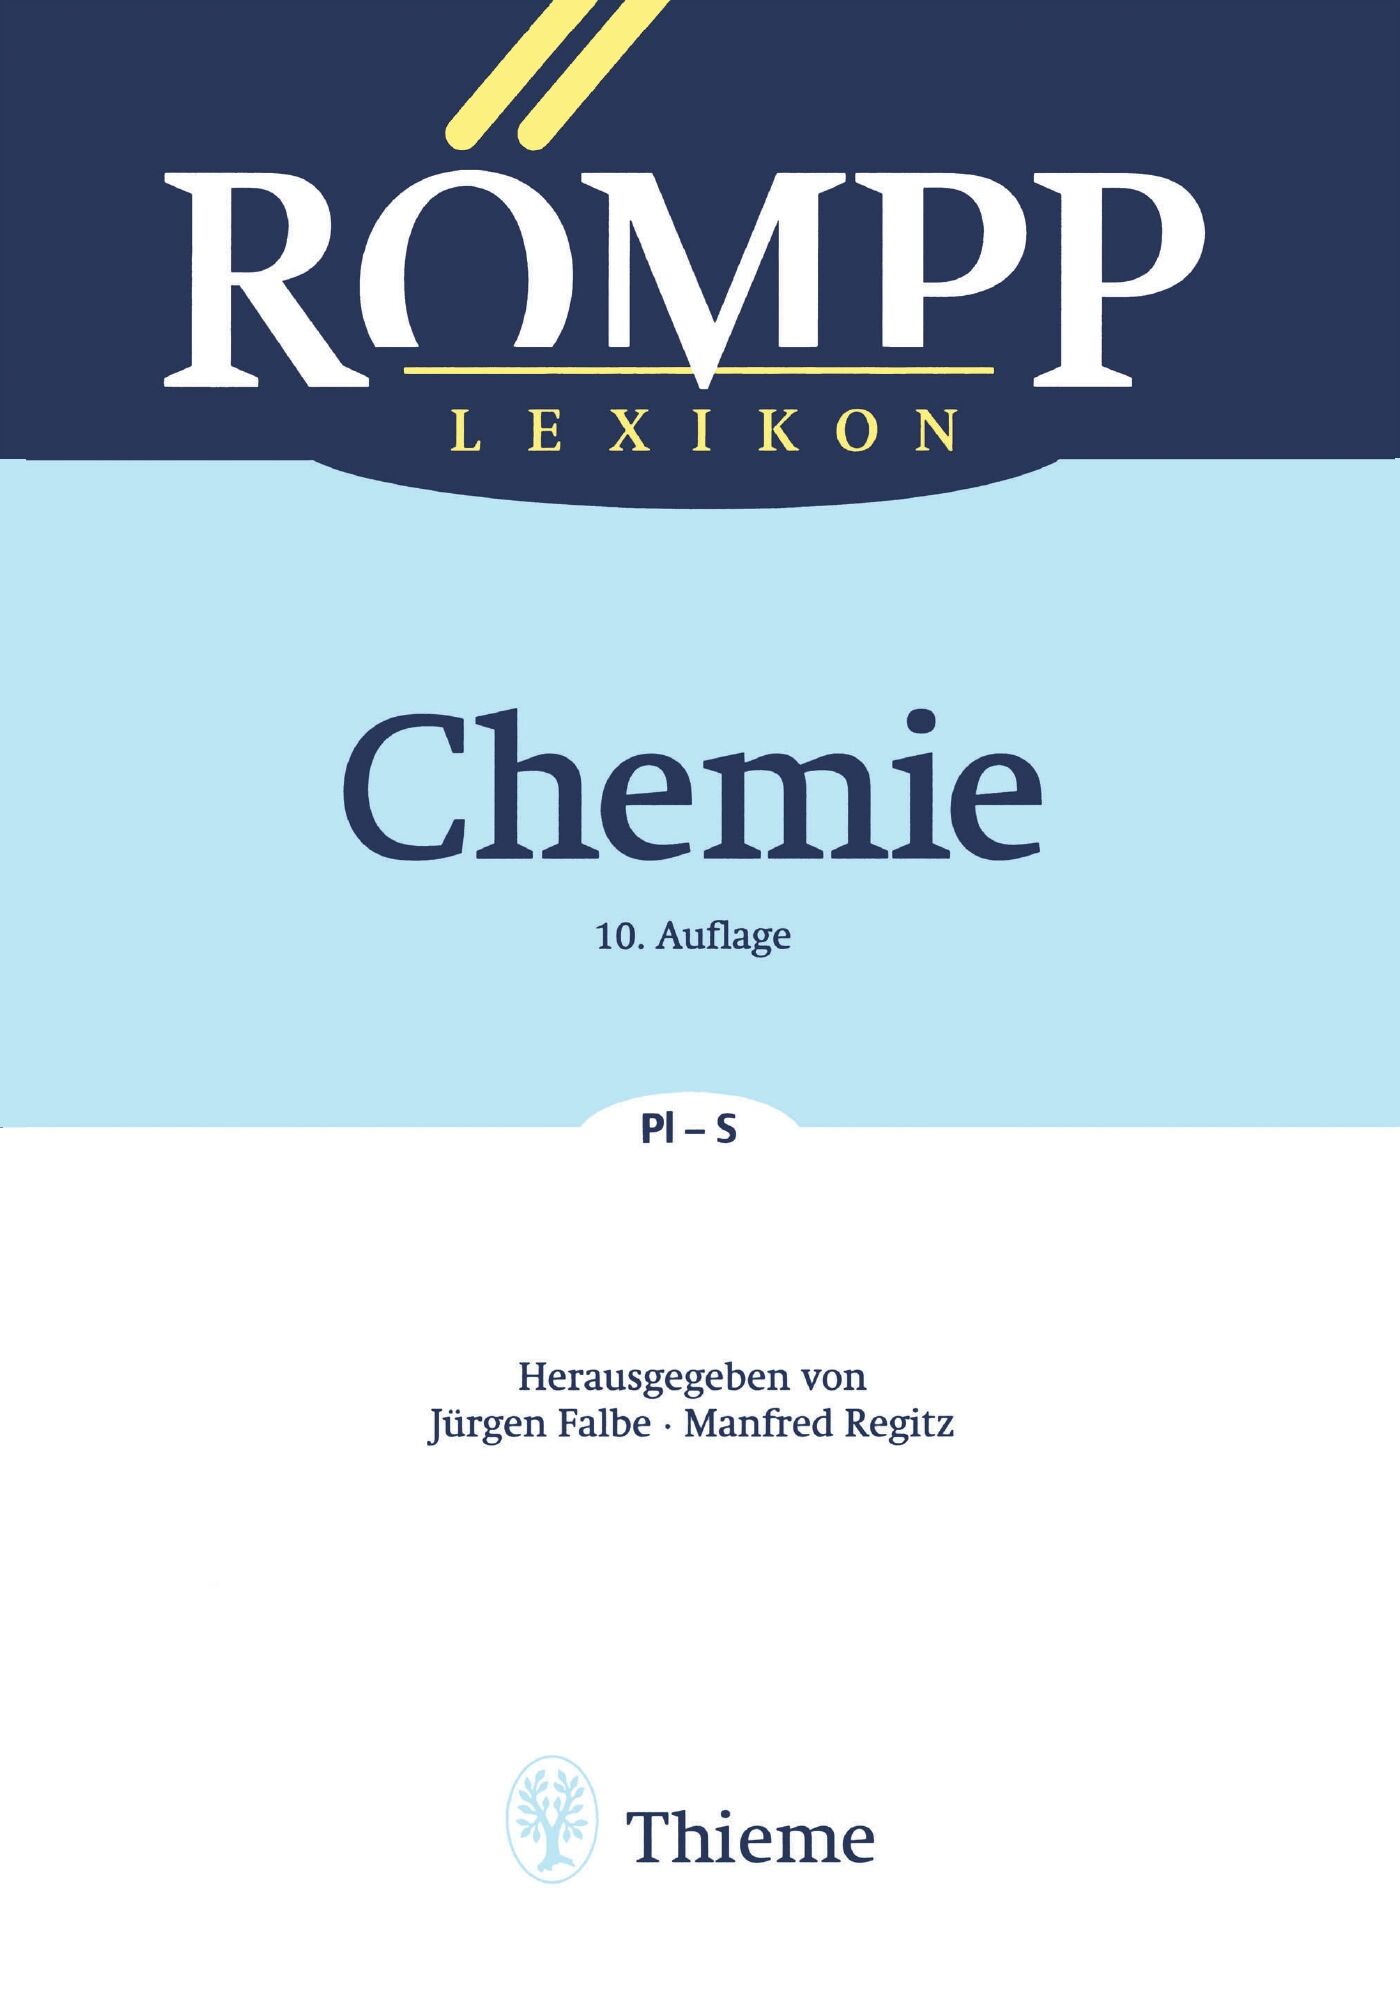 RÖMPP Lexikon Chemie, 10. Auflage, 1996-1999, 9783132000414